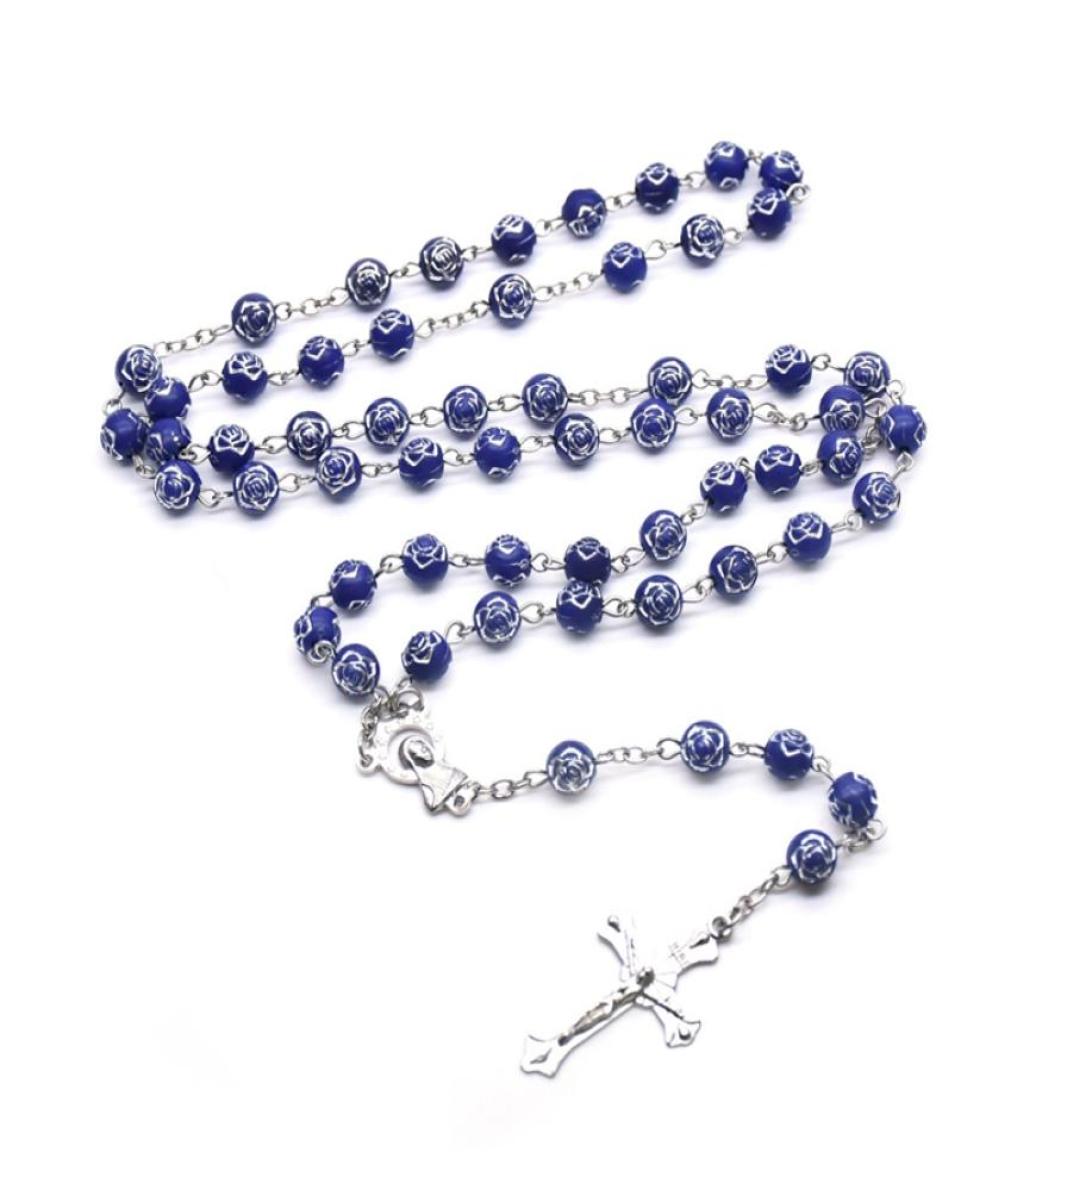 

Blue Plastic Rose Strand Neckalce Long Virgin Cross Rosary Necklace For Men Women Religious Jewelry1592180